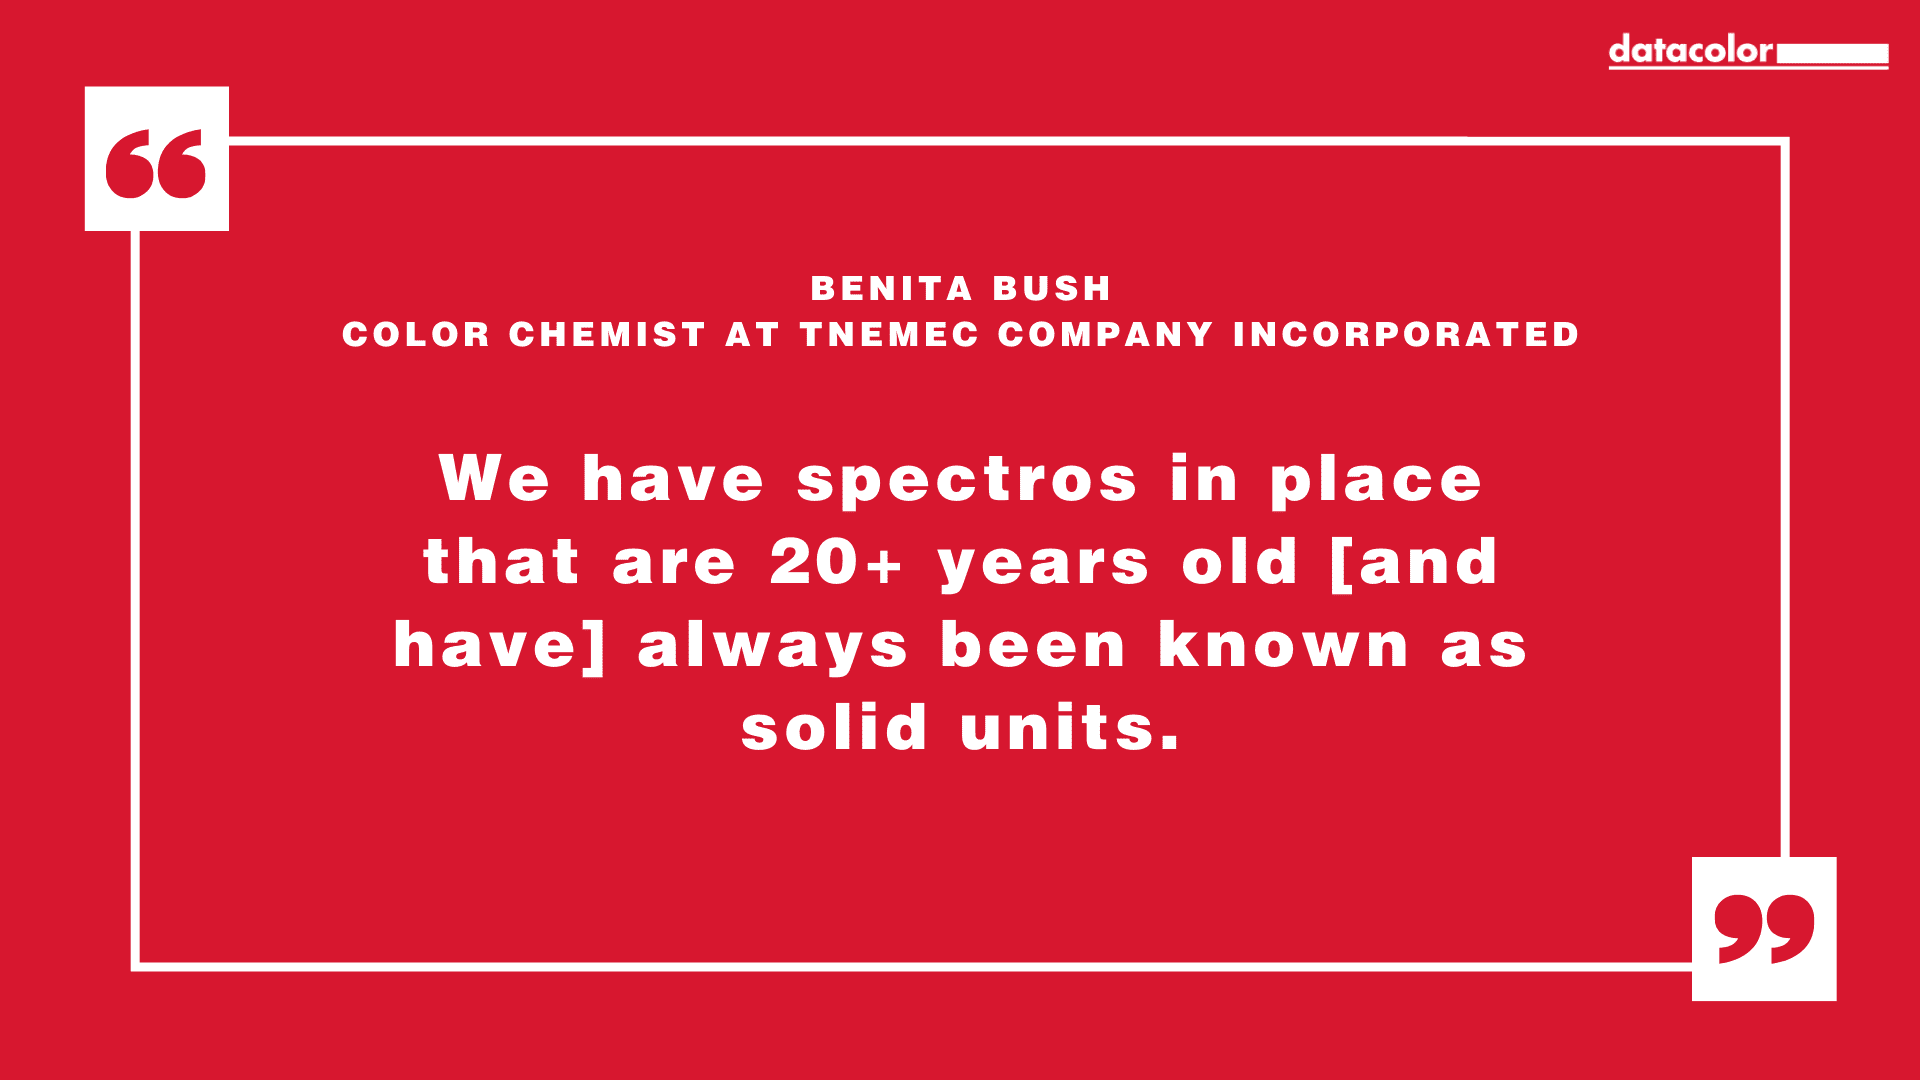 来自特奈麦克公司颜色化学家 Benita Bush 的引述